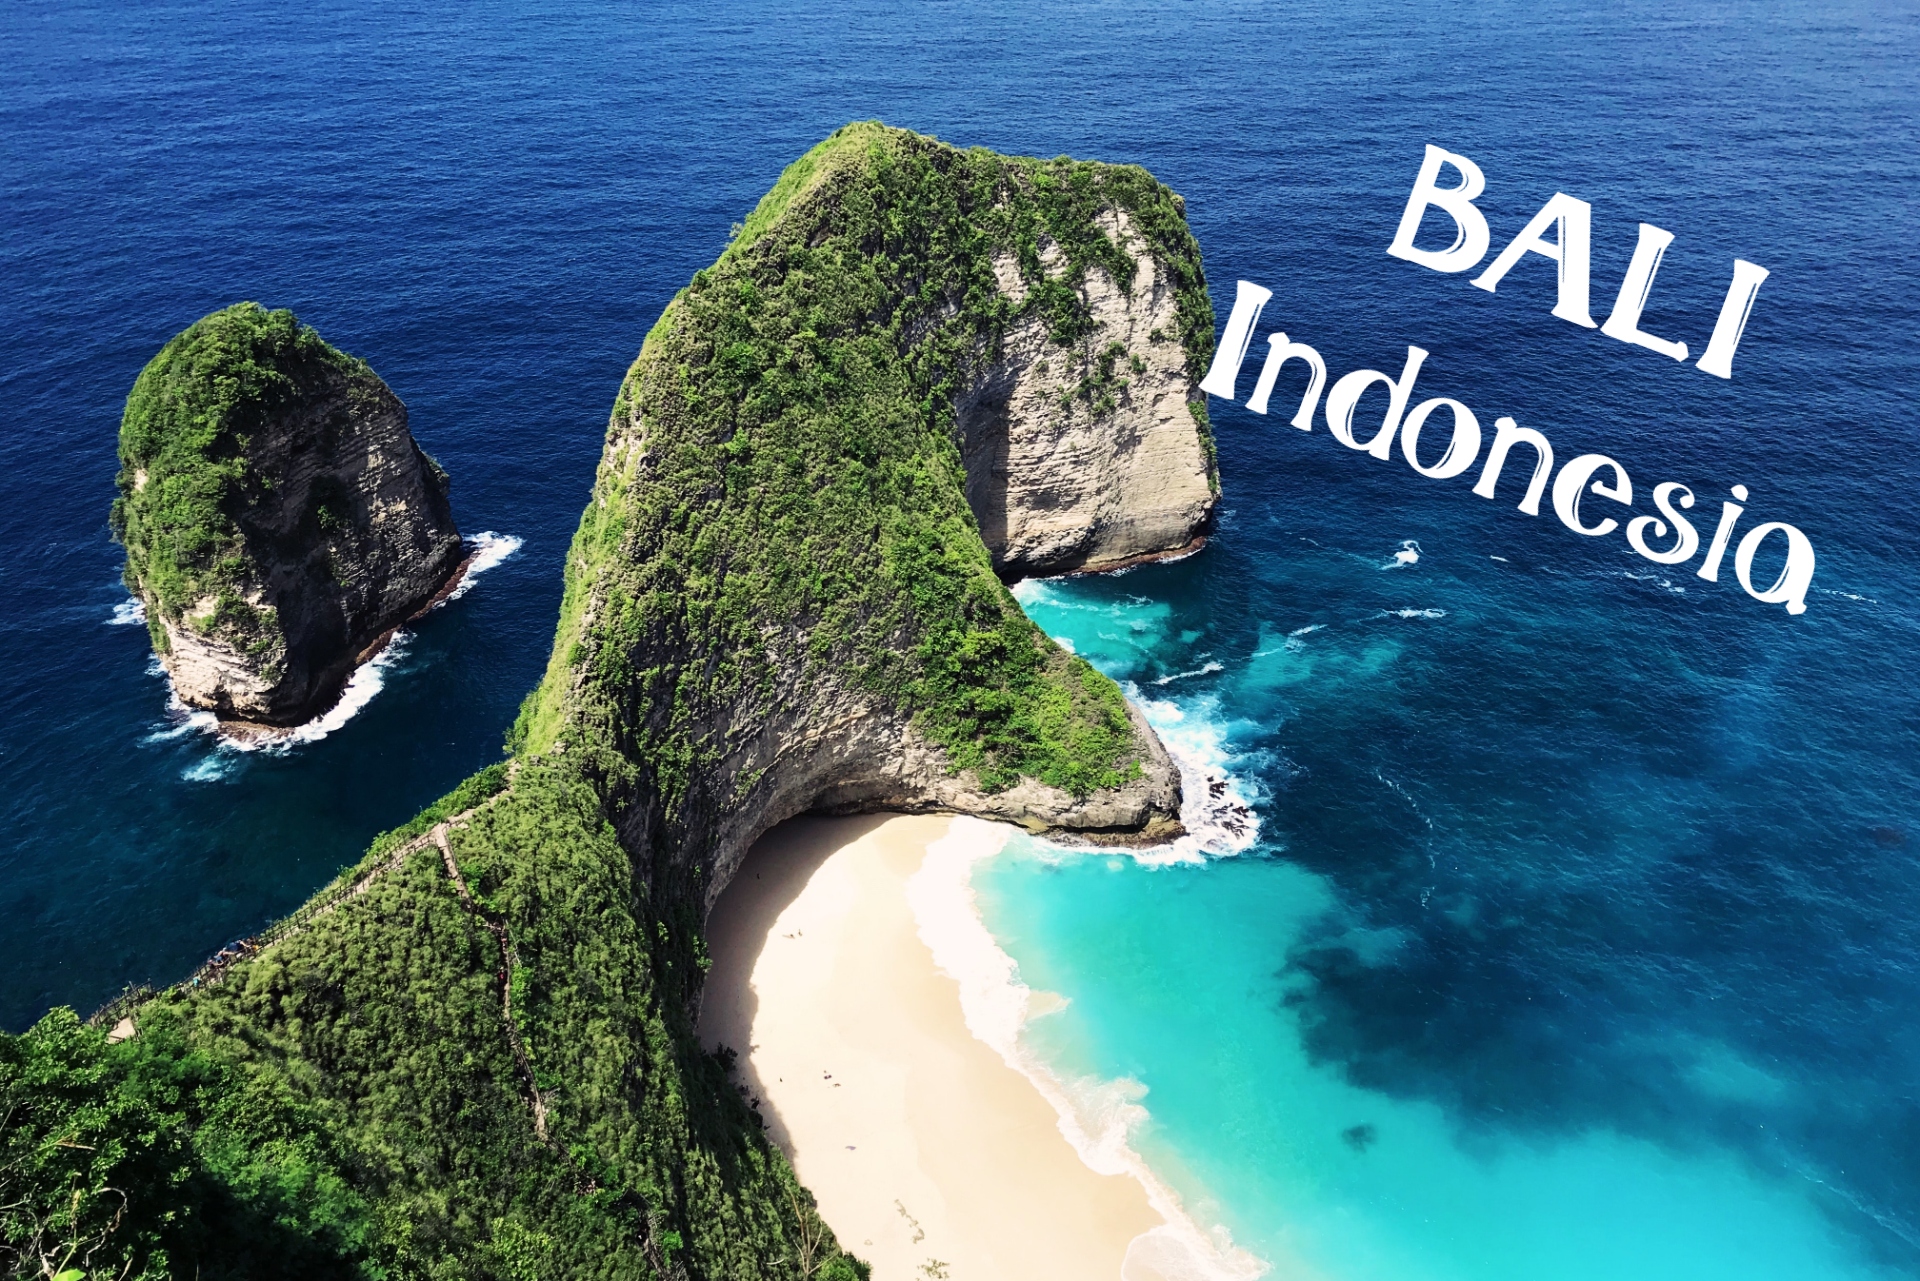 TOUR THAM QUAN HÀ NÔI - BIỂN ĐẢO BALI INDONESIA 4 NGÀY 3 ĐÊM NĂM 2022